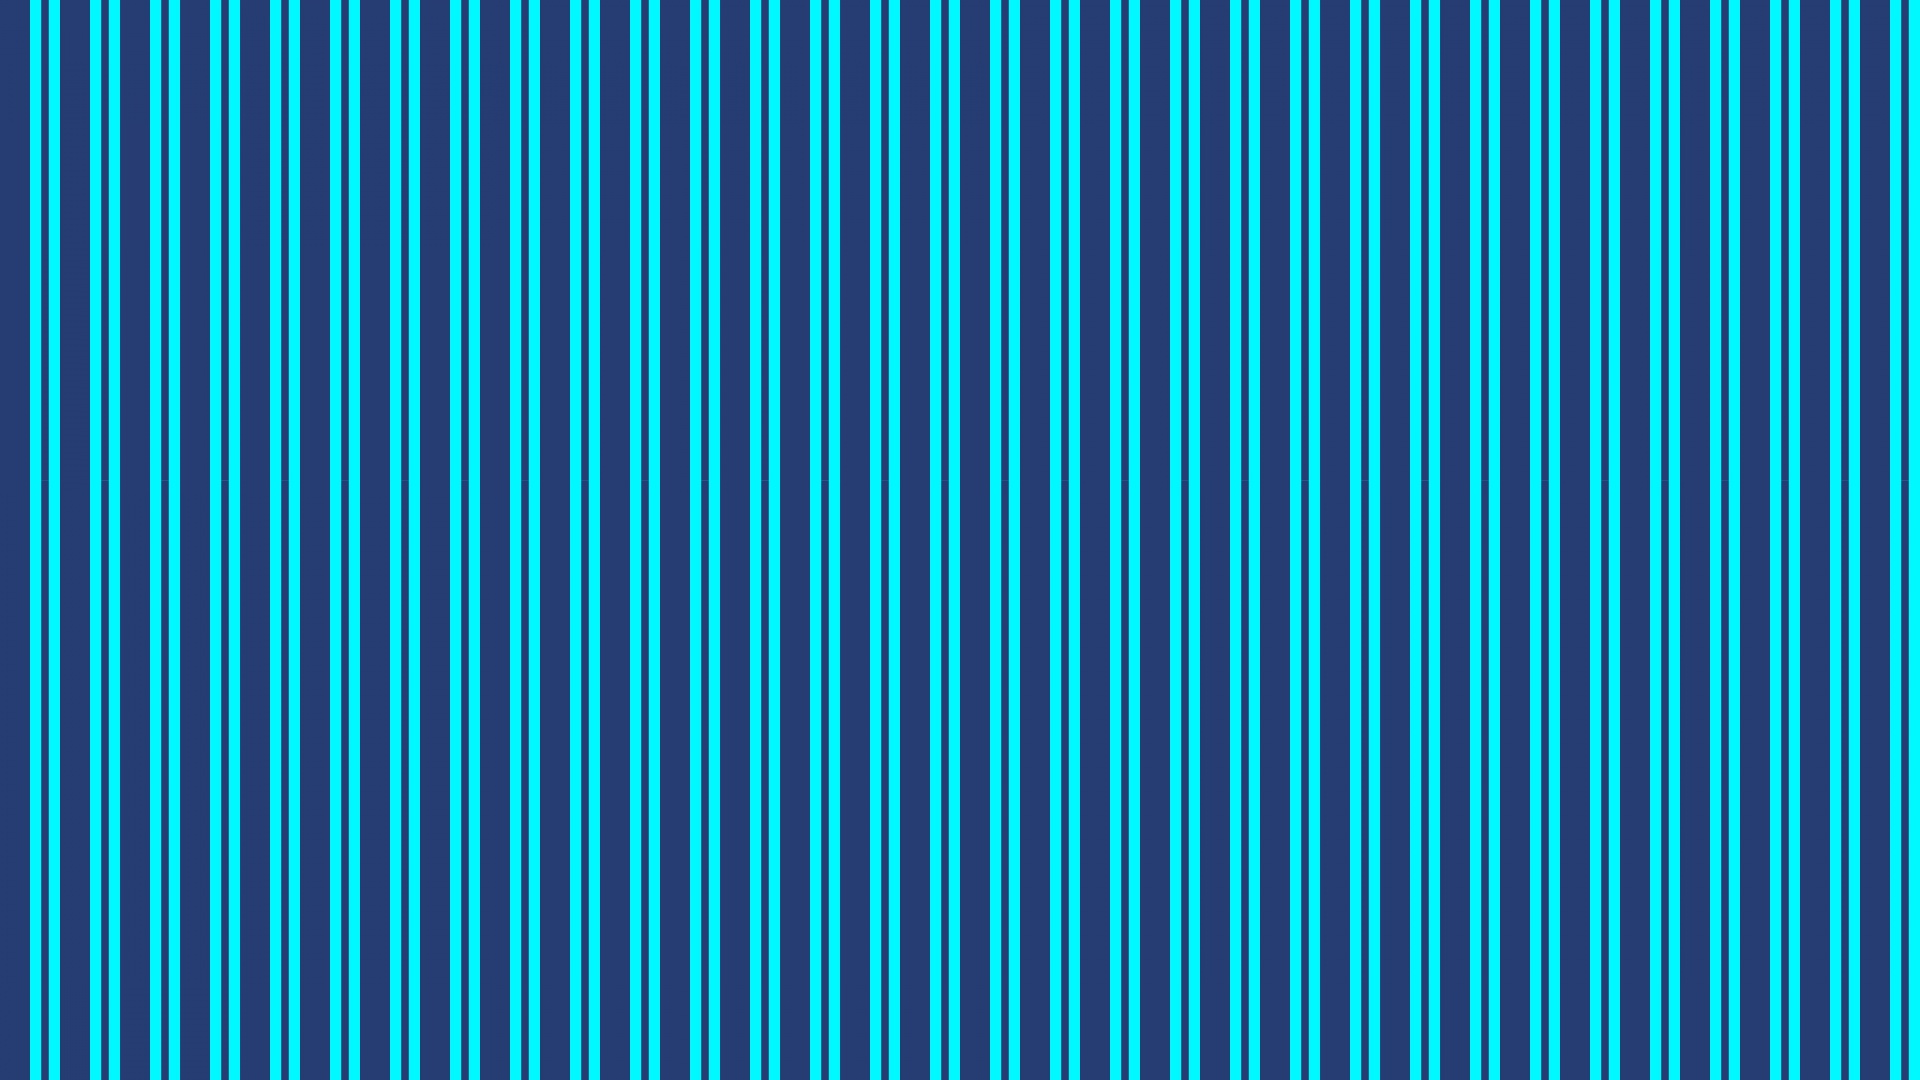 Patrón de rayas azul turquesa